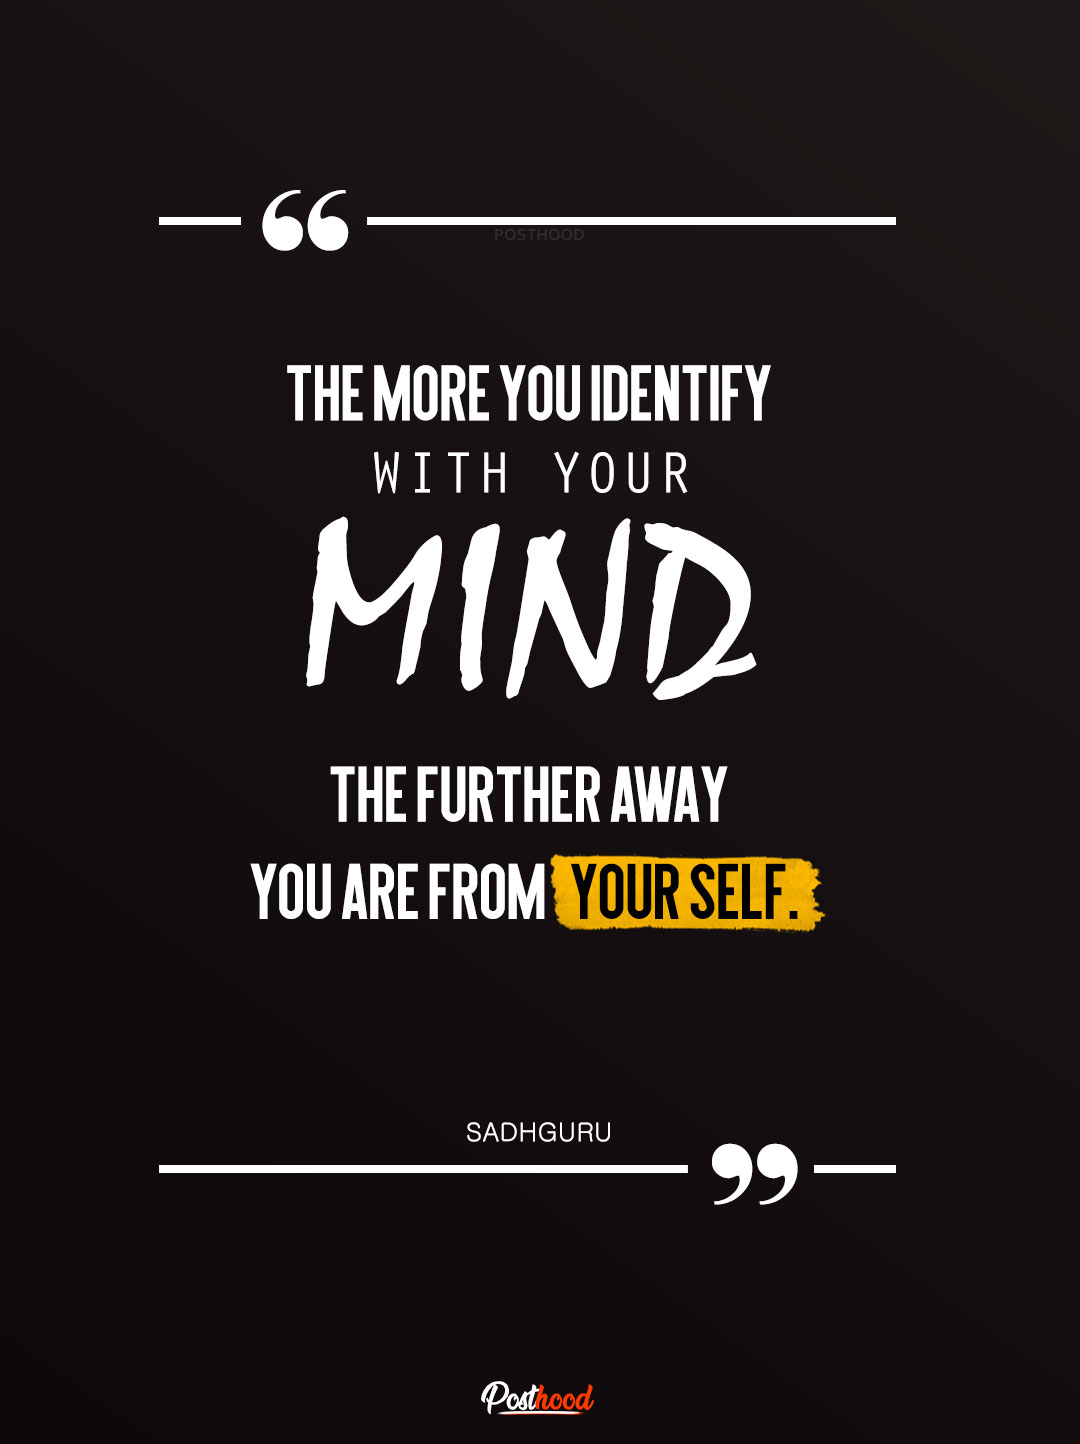 Sadhguru quotes on mind, Powerful quotes of Sadhguru on inner-self, Life quotes, Inspiring Sadhguru quotes.